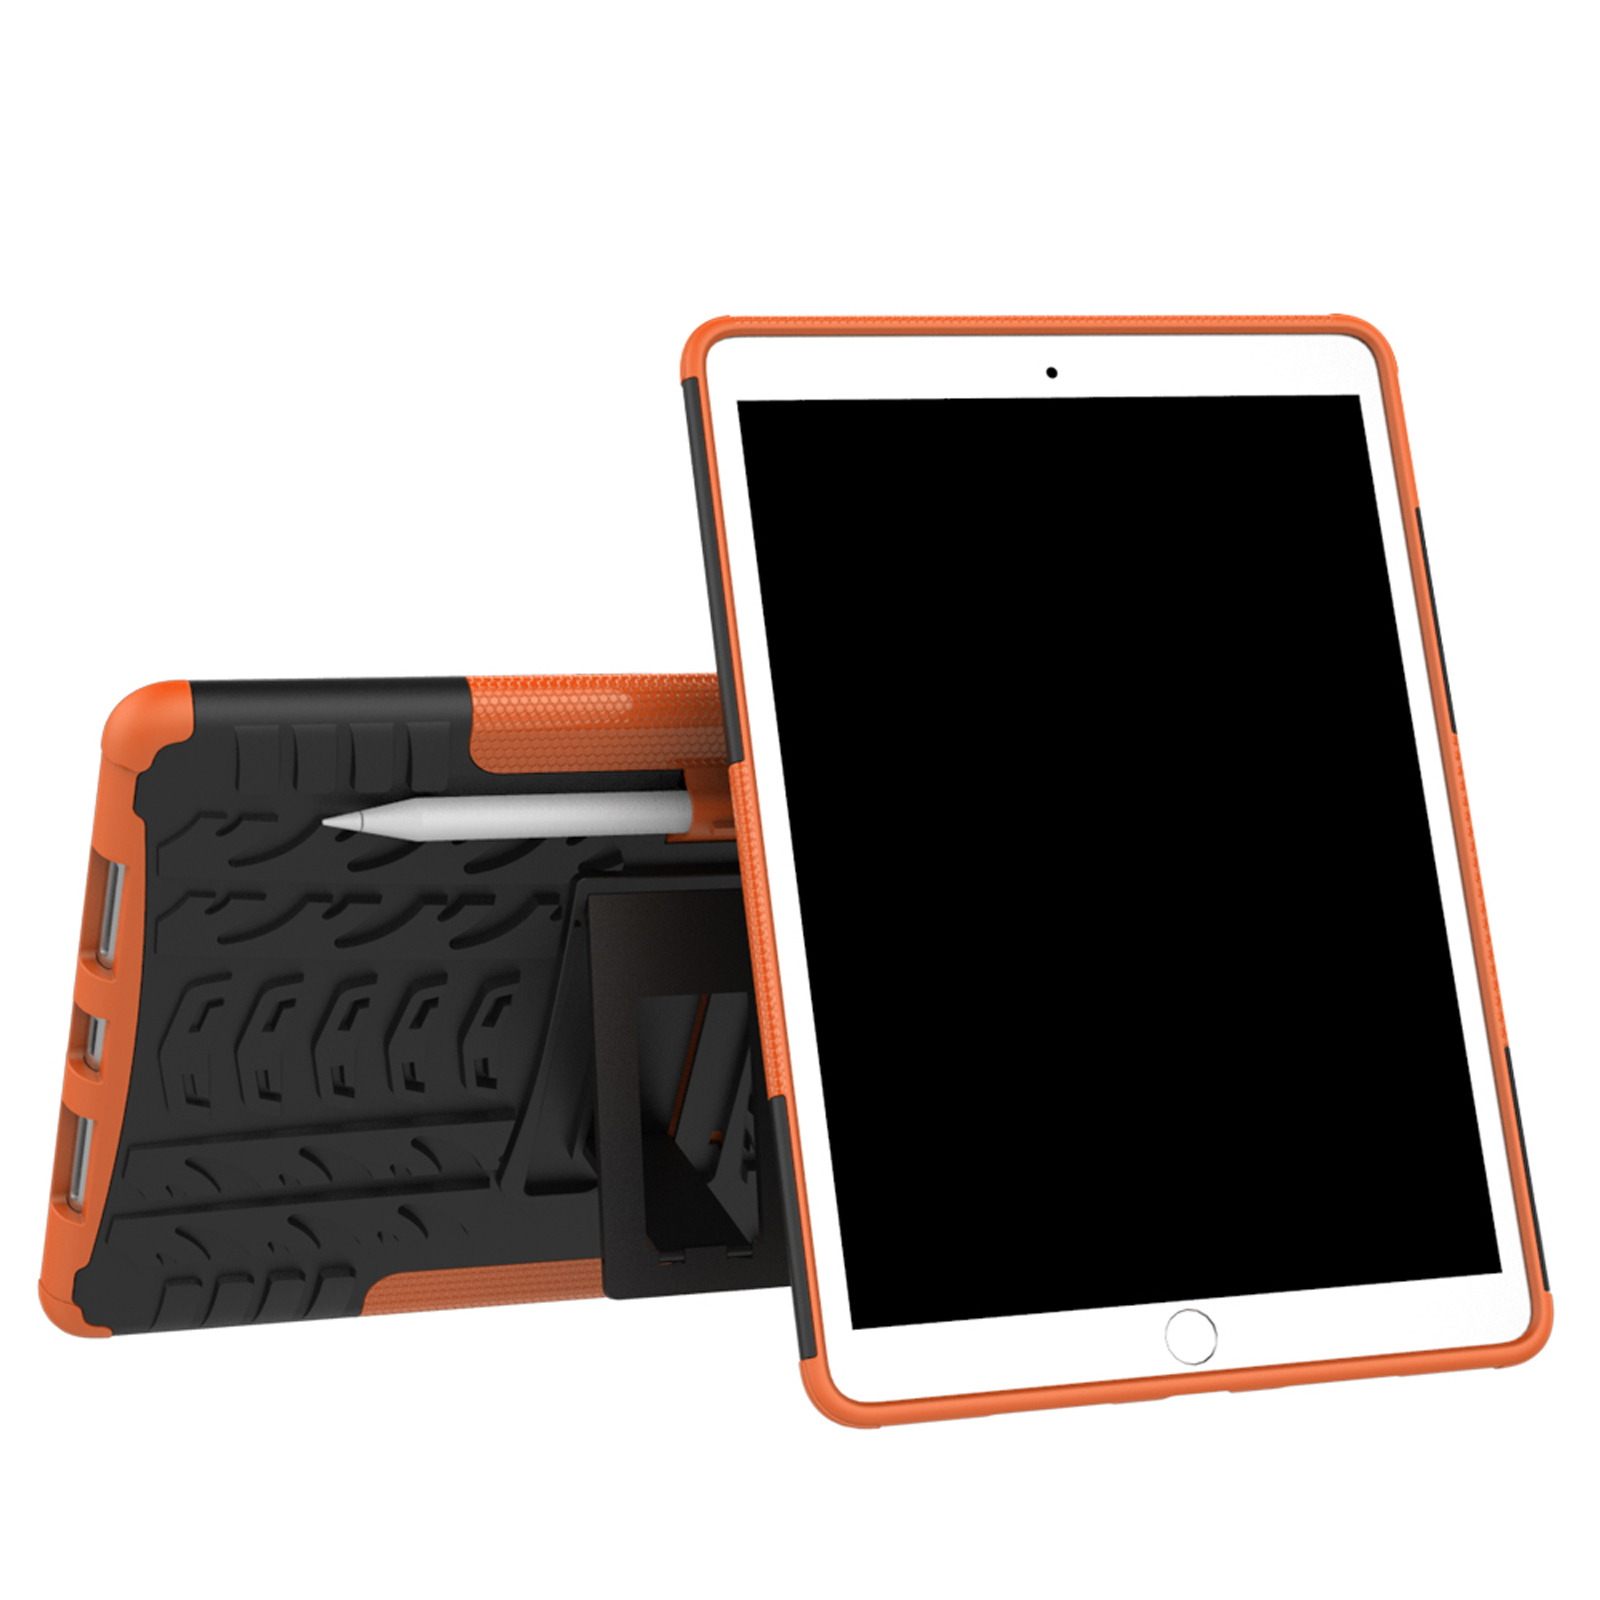 2019 iPad Pro iPad LOBWERK Schutzhülle Apple Kunststoff, Orange Air Bookcover 3 10.5 10.5 2017 für Hülle